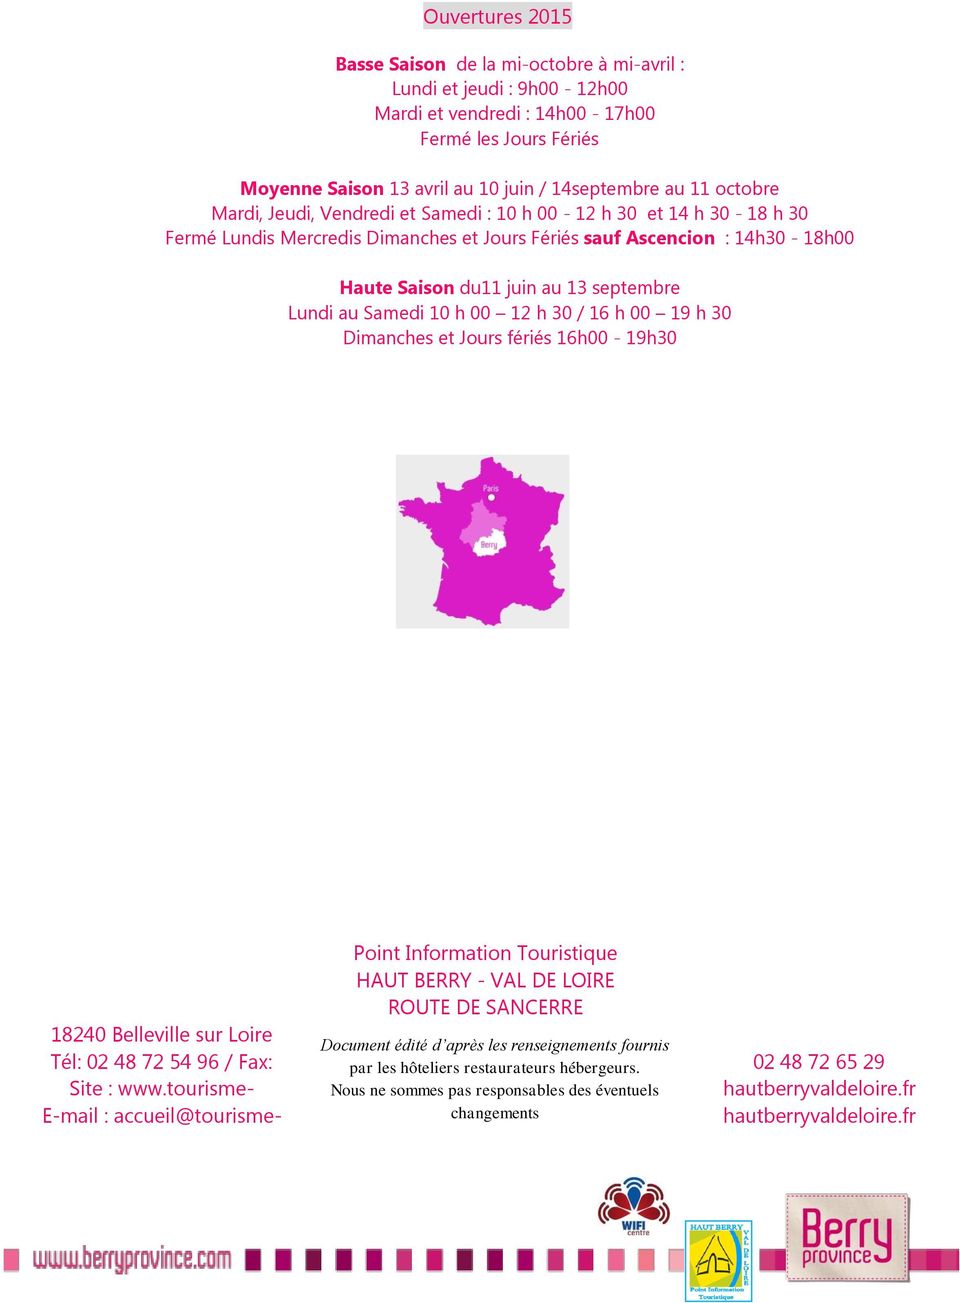 Lundi au Samedi 10 h 00 12 h 30 / 16 h 00 19 h 30 Dimanches et Jours fériés 16h00-19h30 Point Information Touristique HAUT BERRY - VAL DE LOIRE ROUTE DE SANCERRE 18240 Belleville sur Loire Document